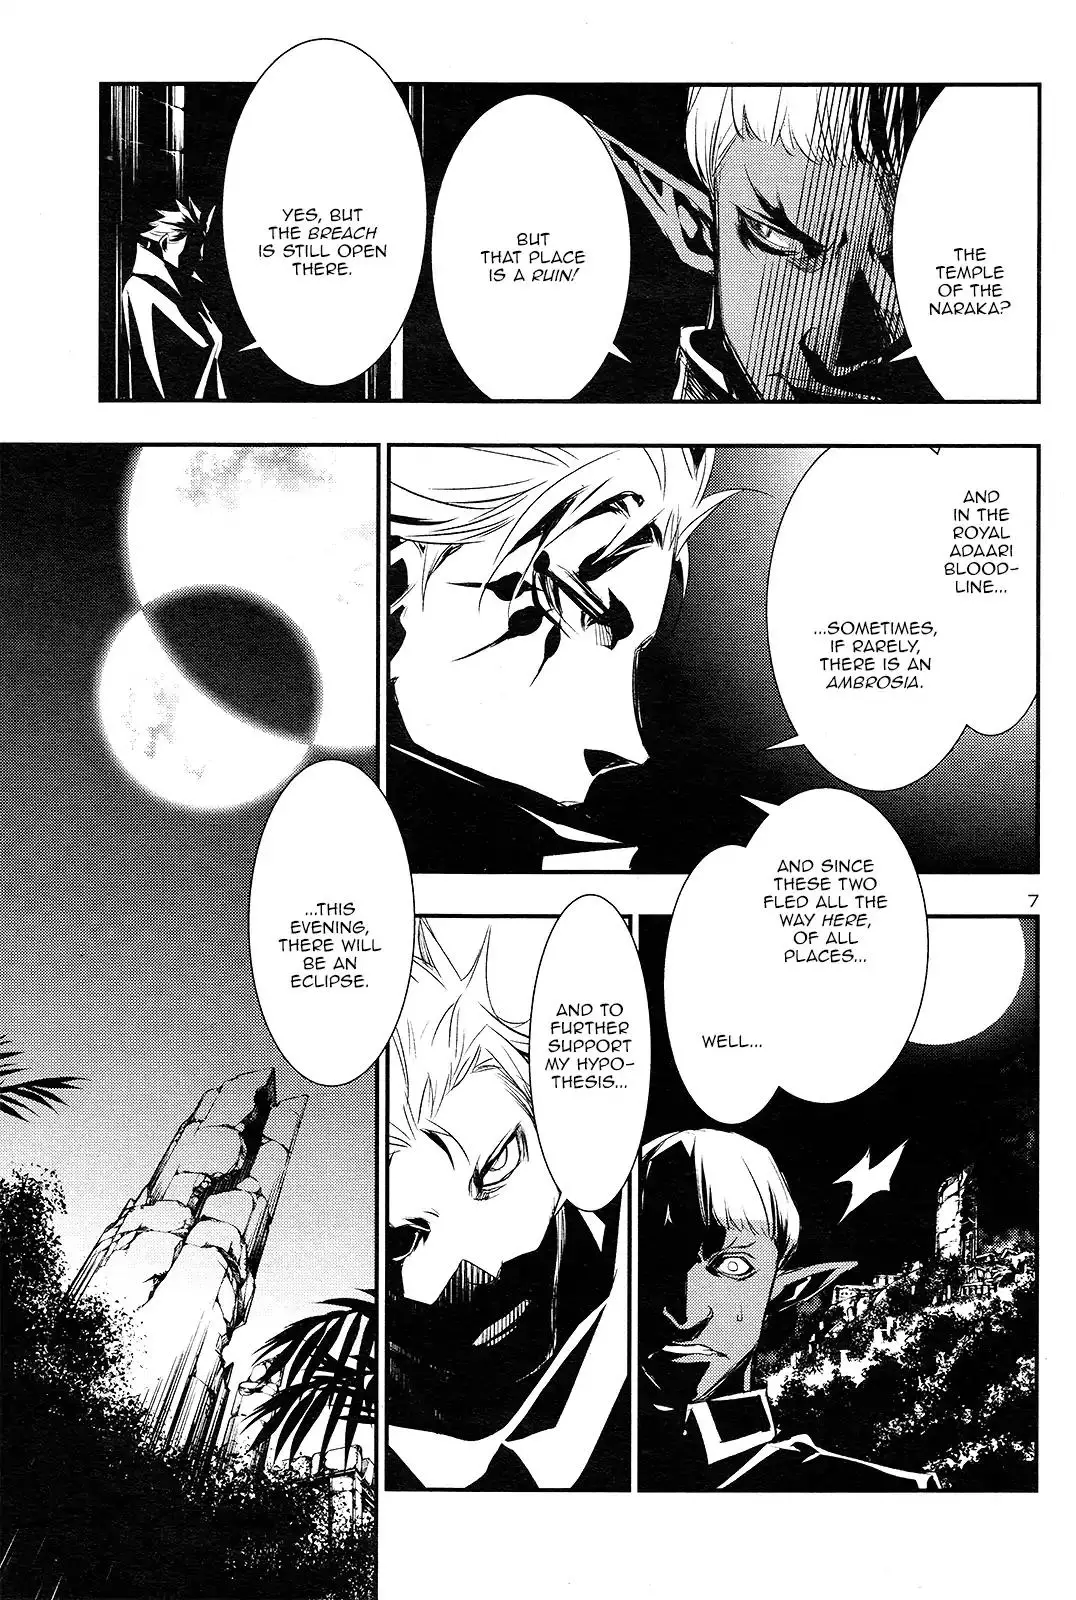 Shinju no Nectar - 1 page 7